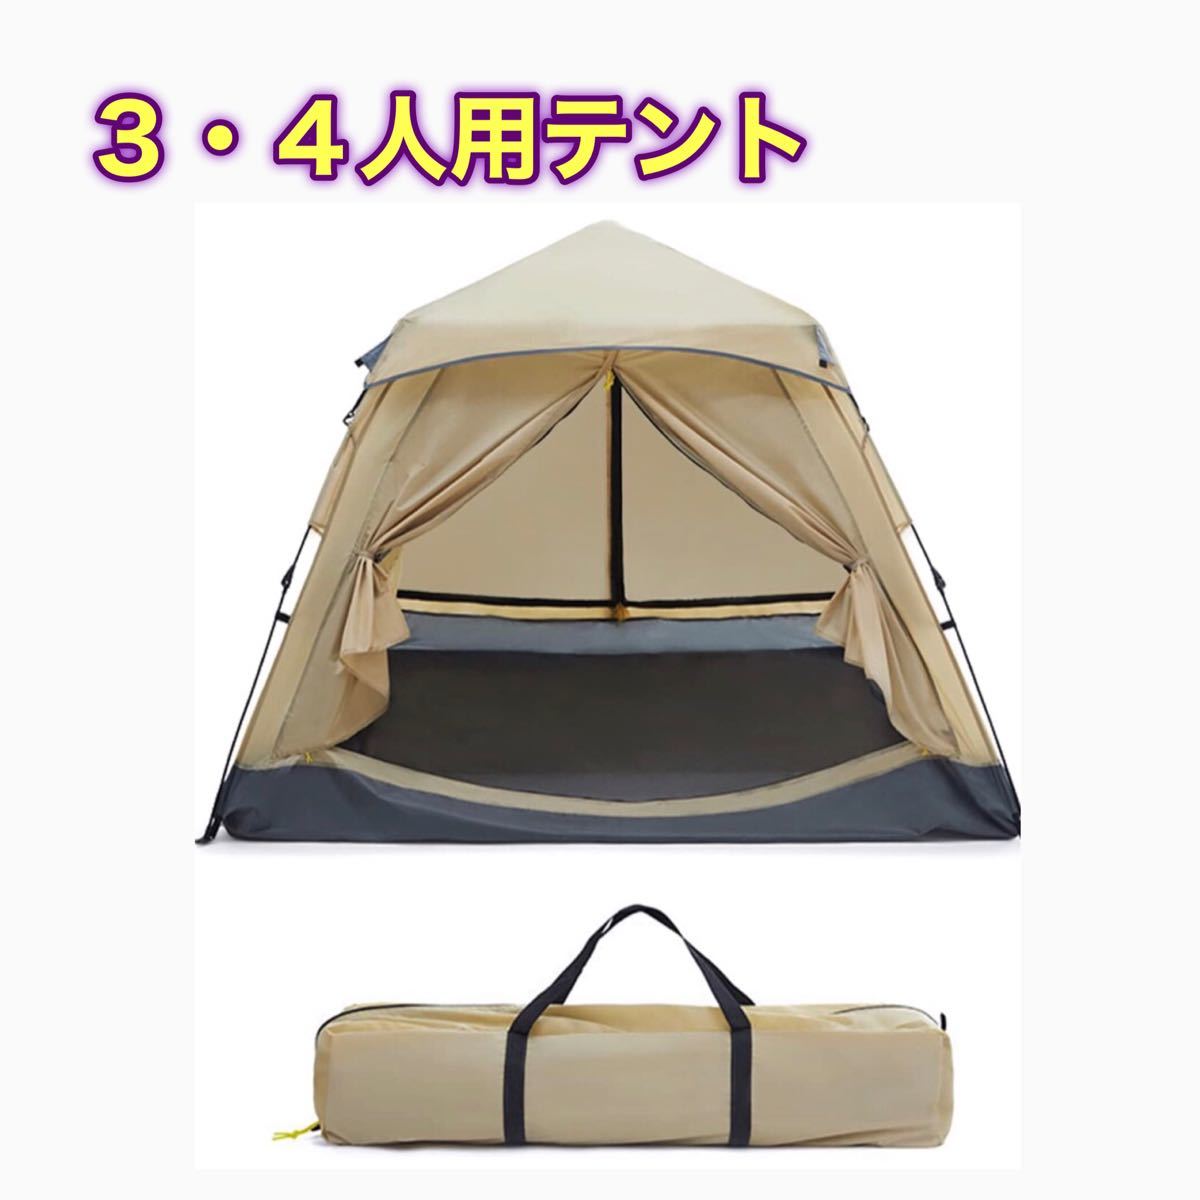 【ワンタッチ式】テント 3~4人用 二重層 設営簡単 uvカット 防災 防風防水